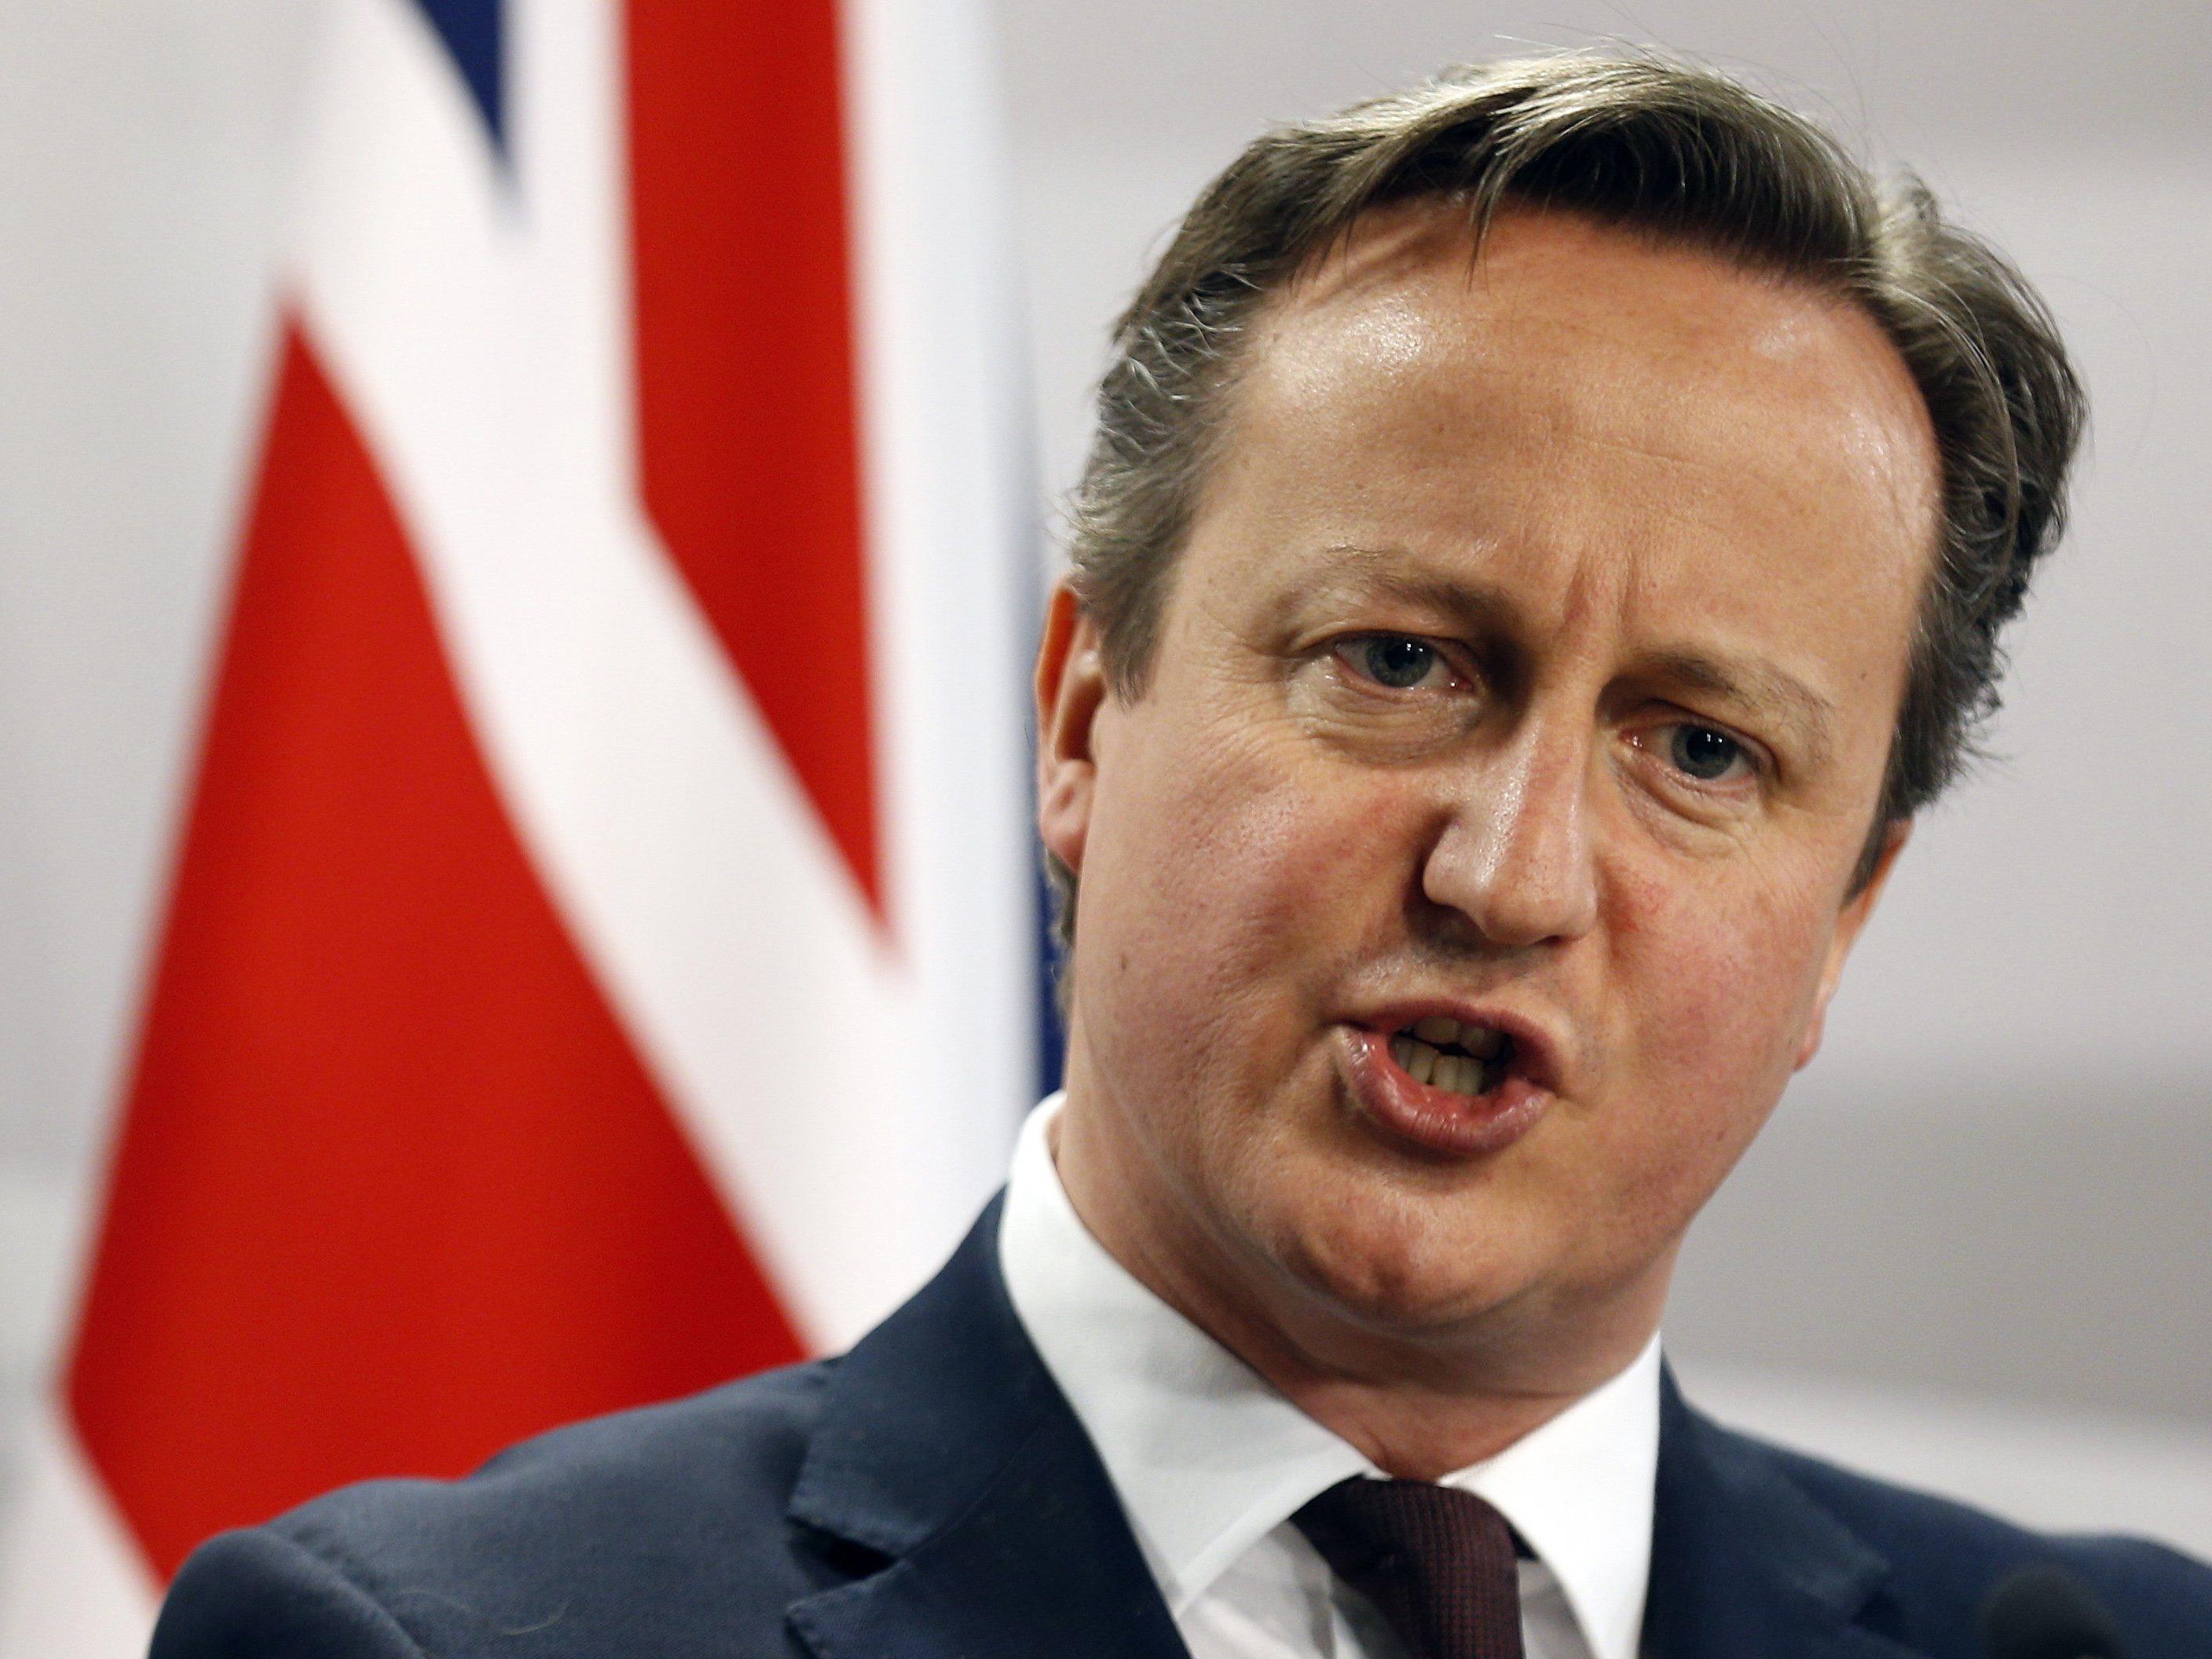 Soll die EU weitere Zugeständnisse an David Cameron und Großbritannien machen?